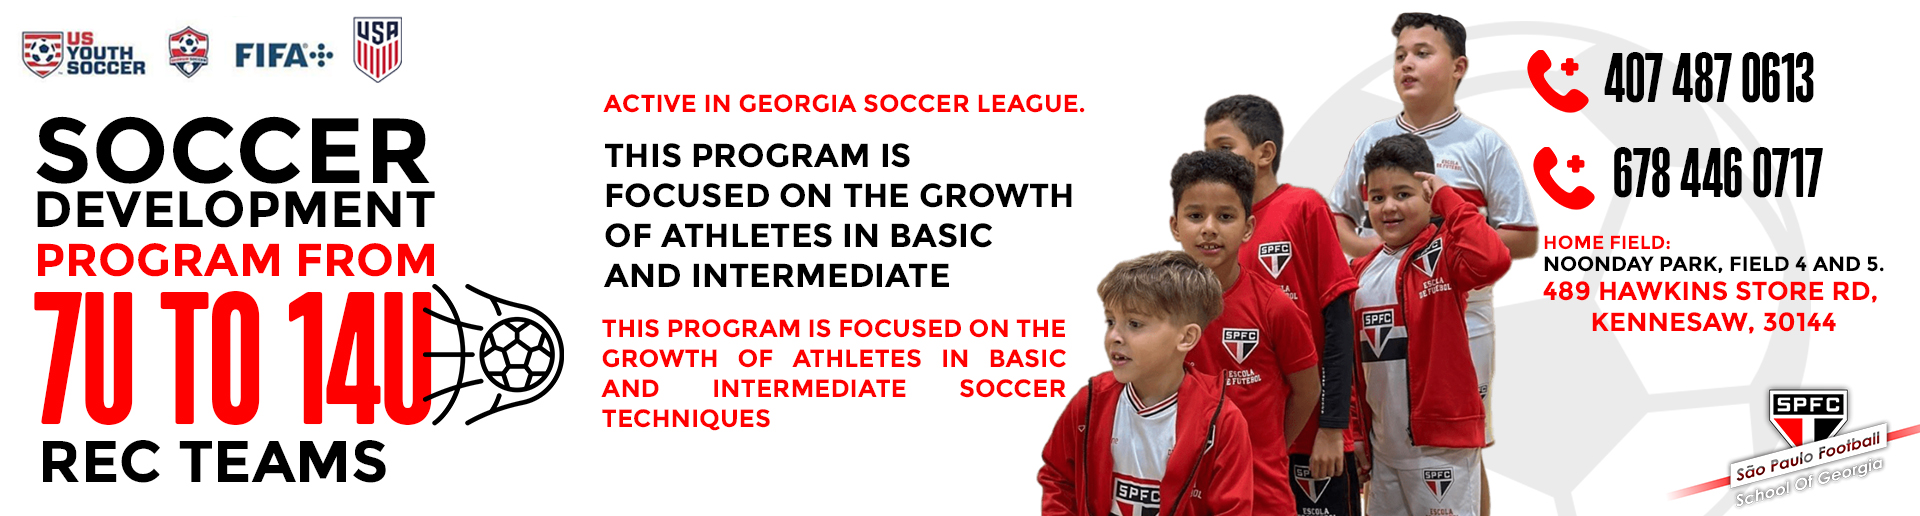 Soccer Development Program